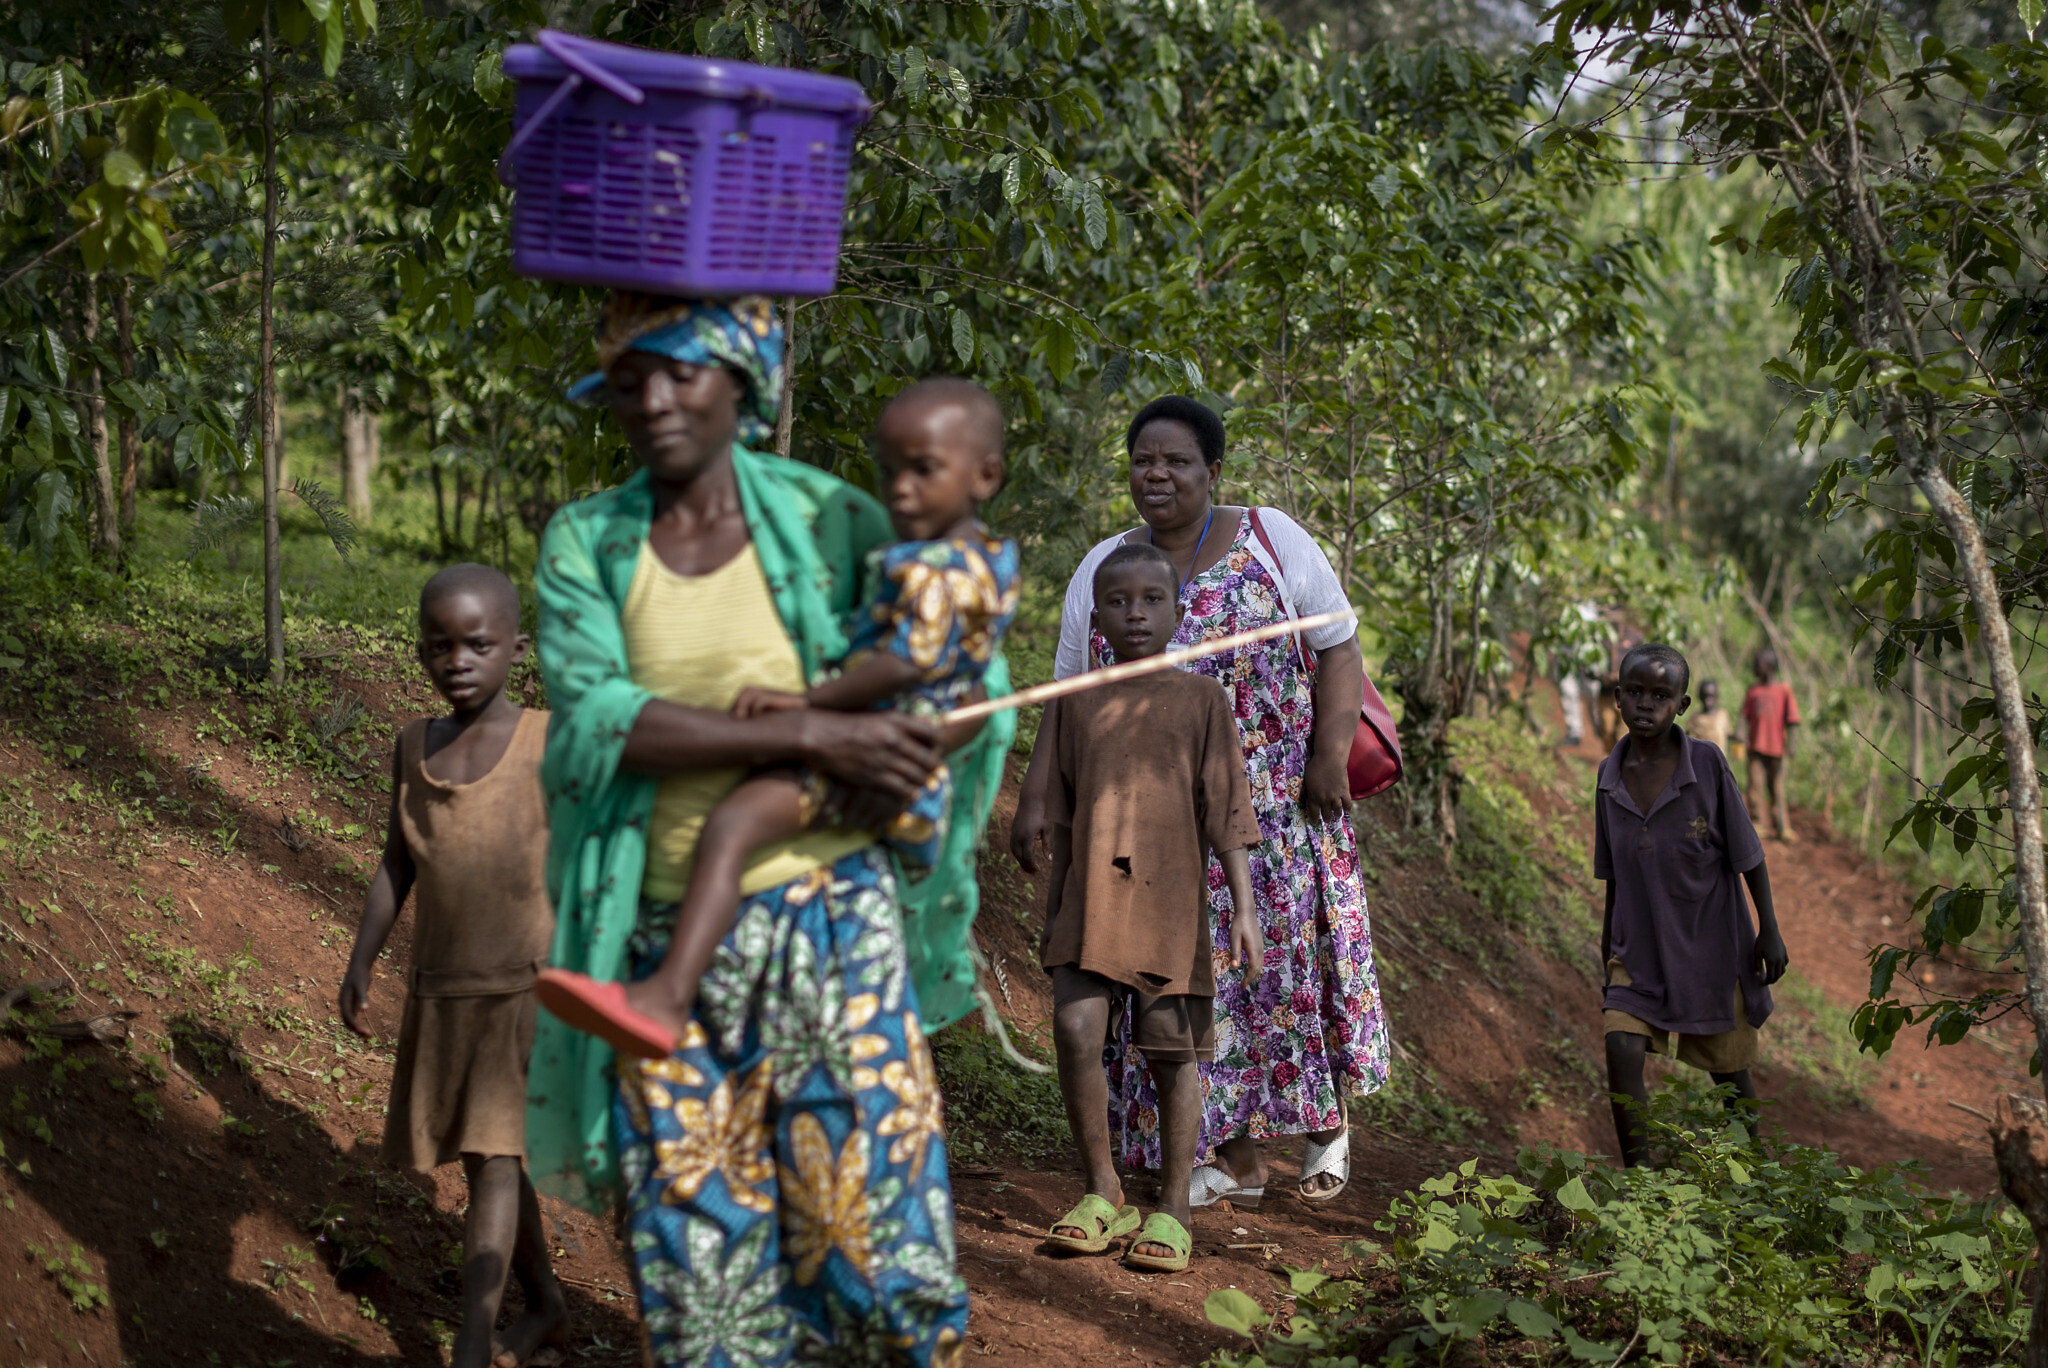 אילוסטרציה, אישה בת 89 מלווה לבדיקה רפואית בכפר במערב רואנדה, נובמבר 2019 (צילום: AP Photo/Ben Curtis)